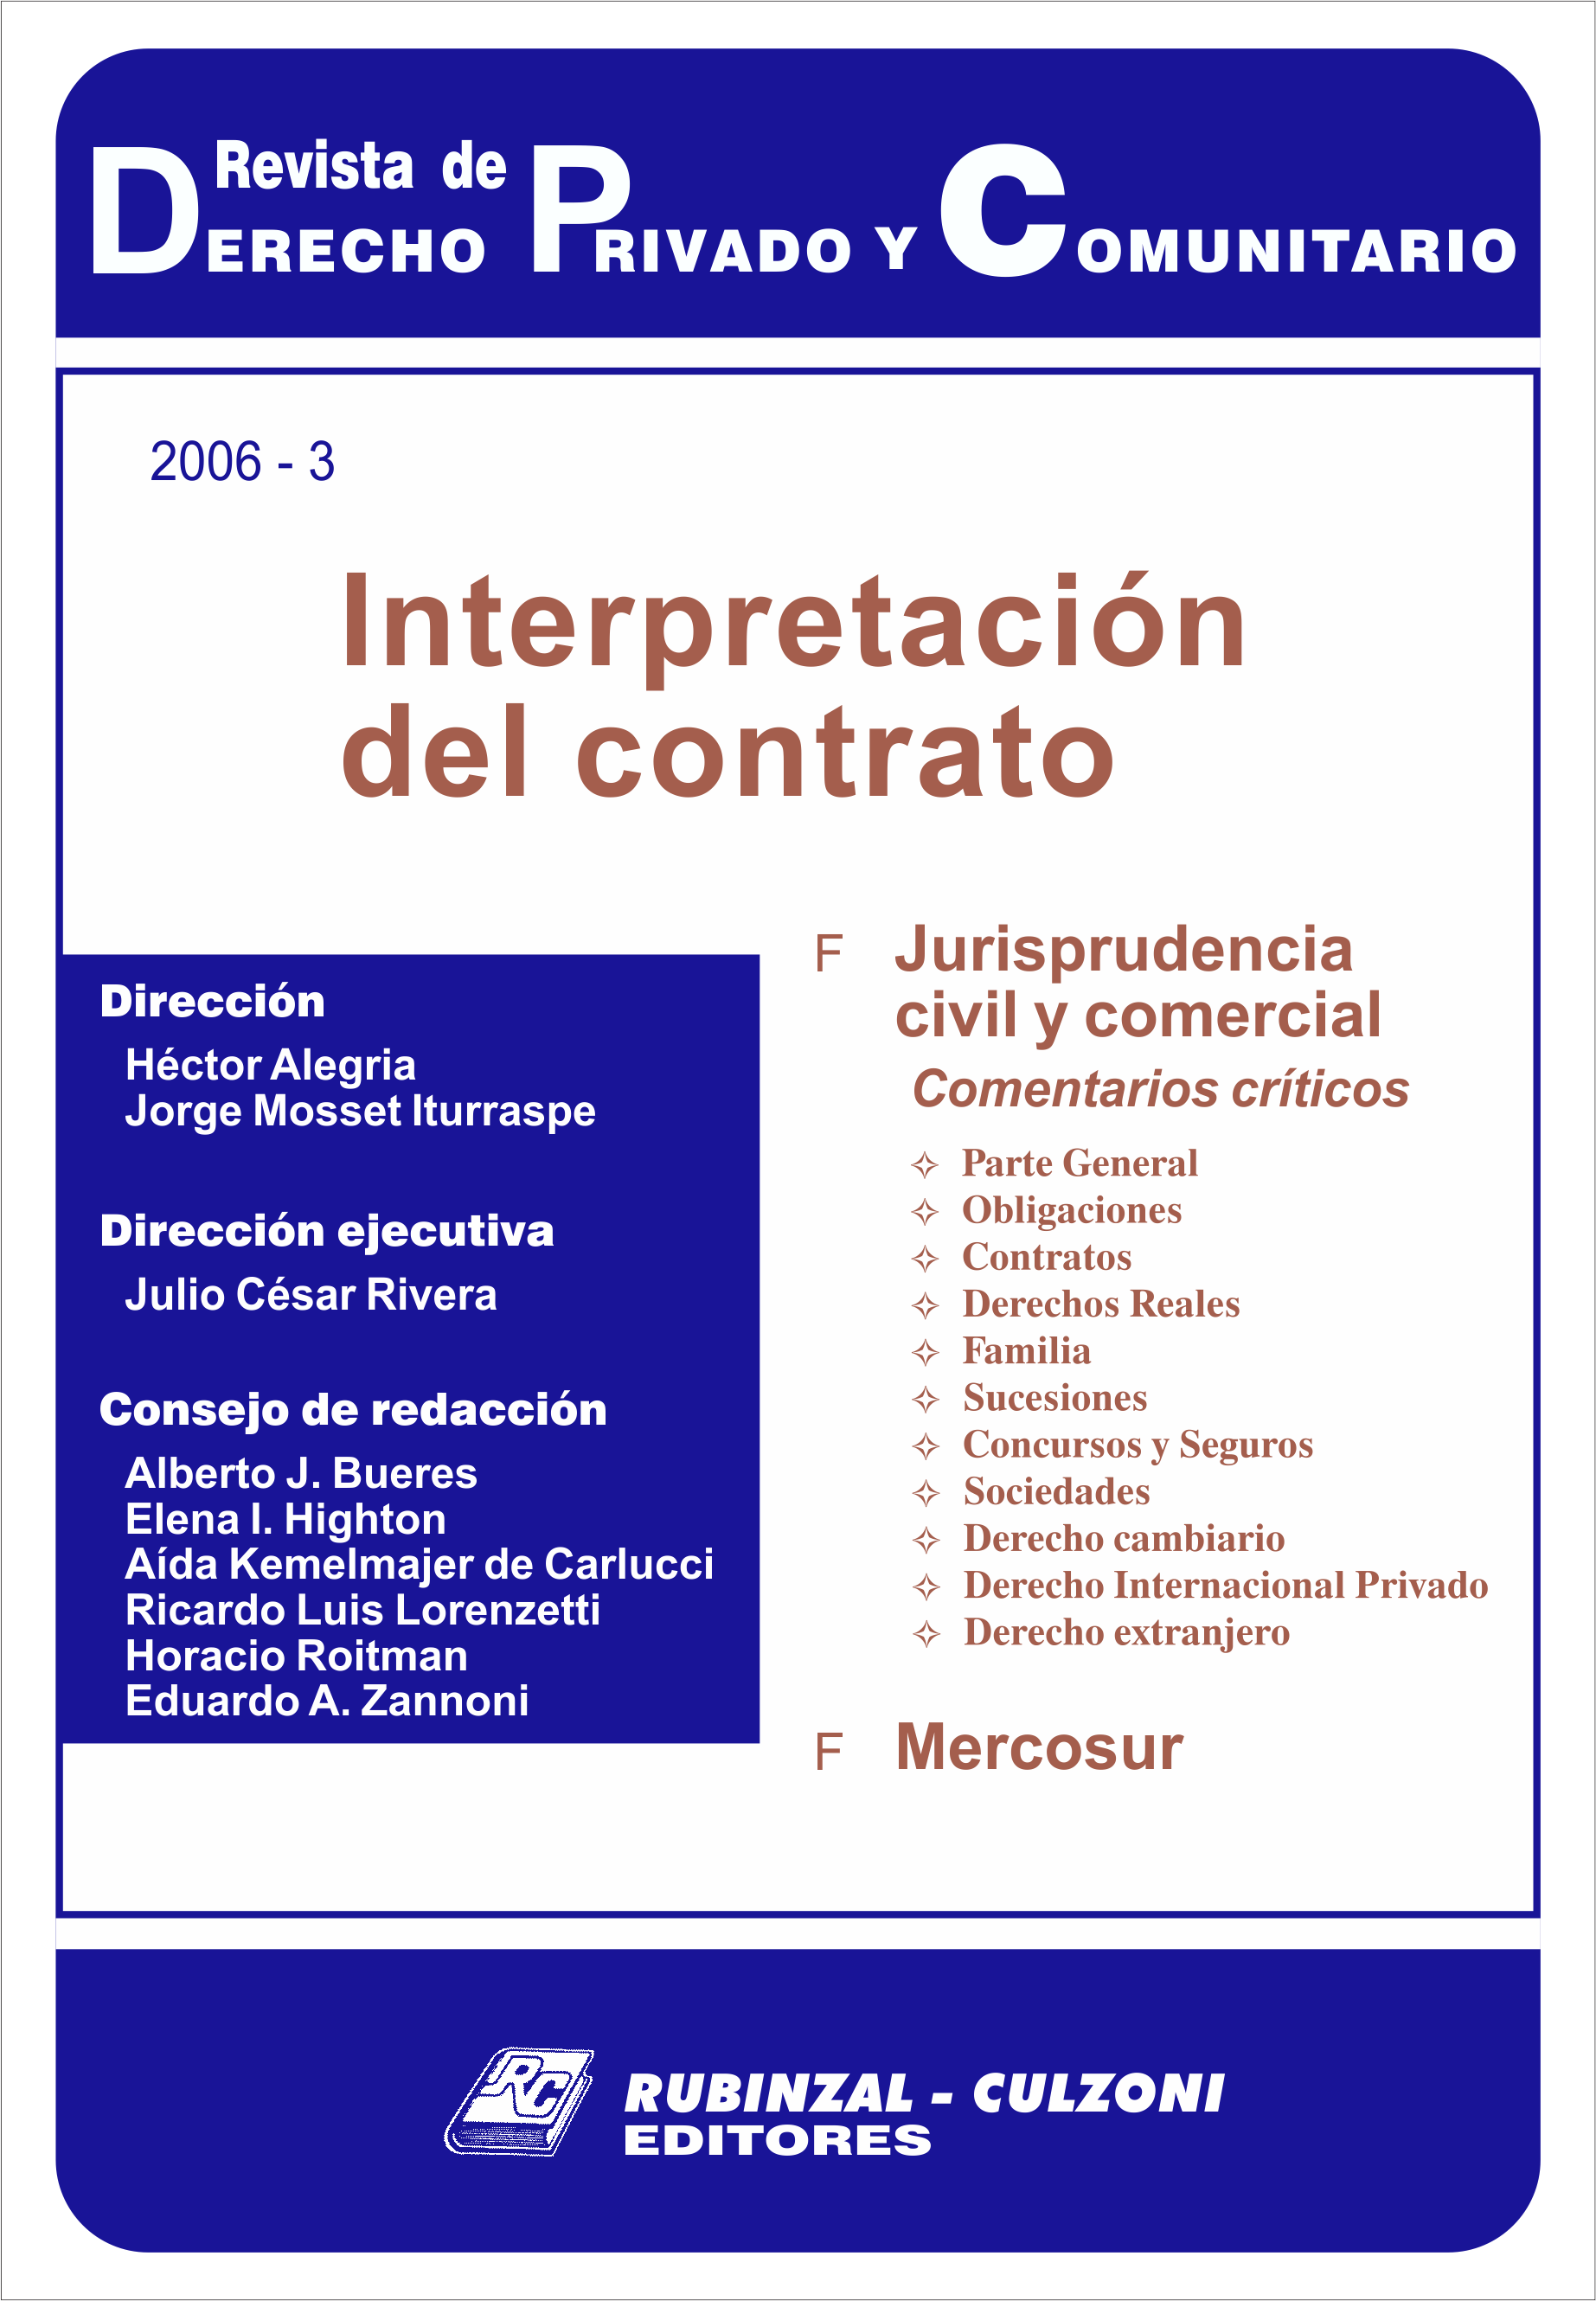 Revista de Derecho Privado y Comunitario - Interpretación del contrato.